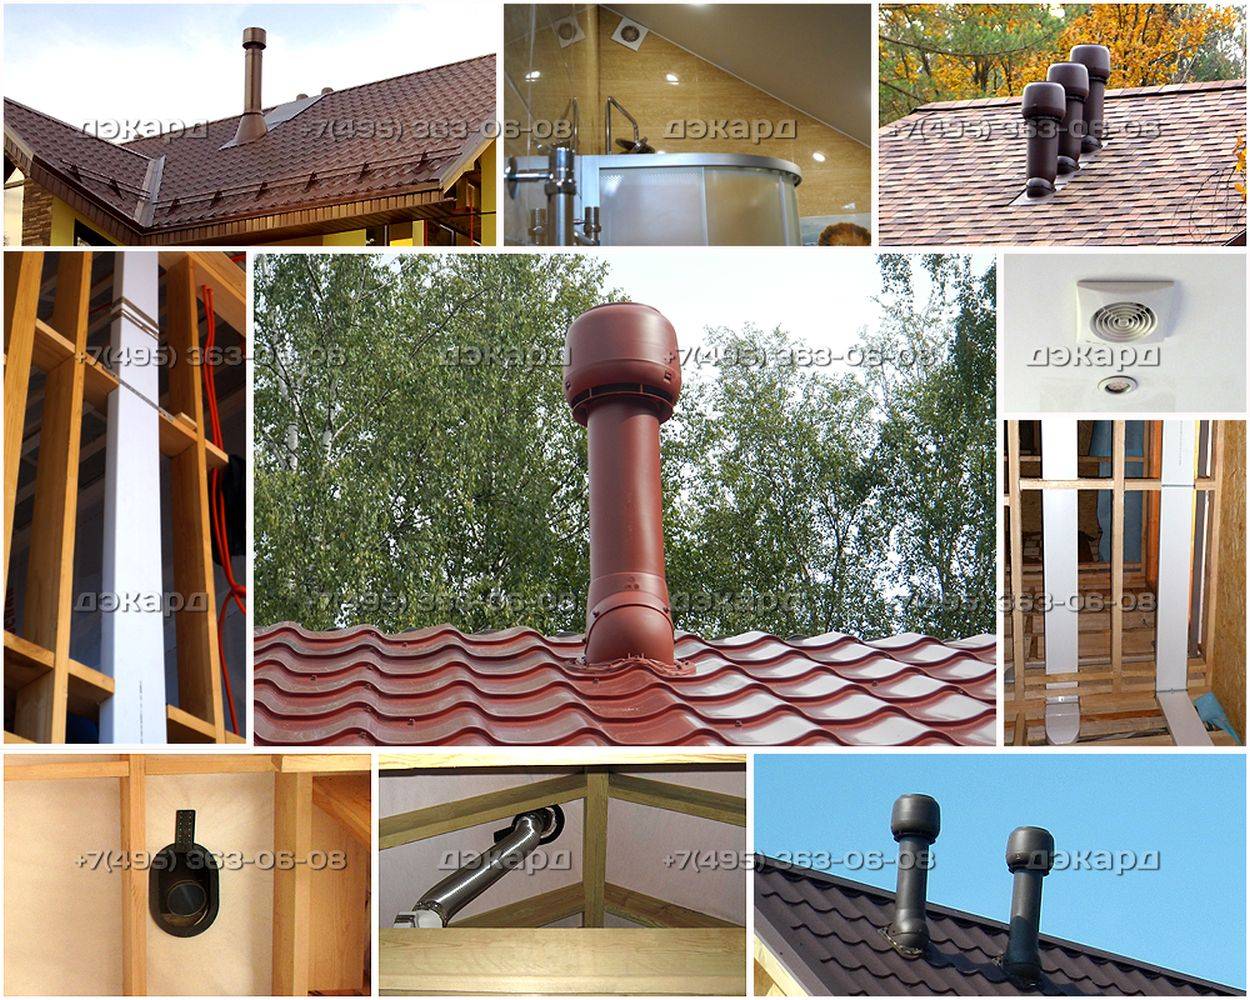 Схемы установки и способы крепления вентиляционных выходов на крышу